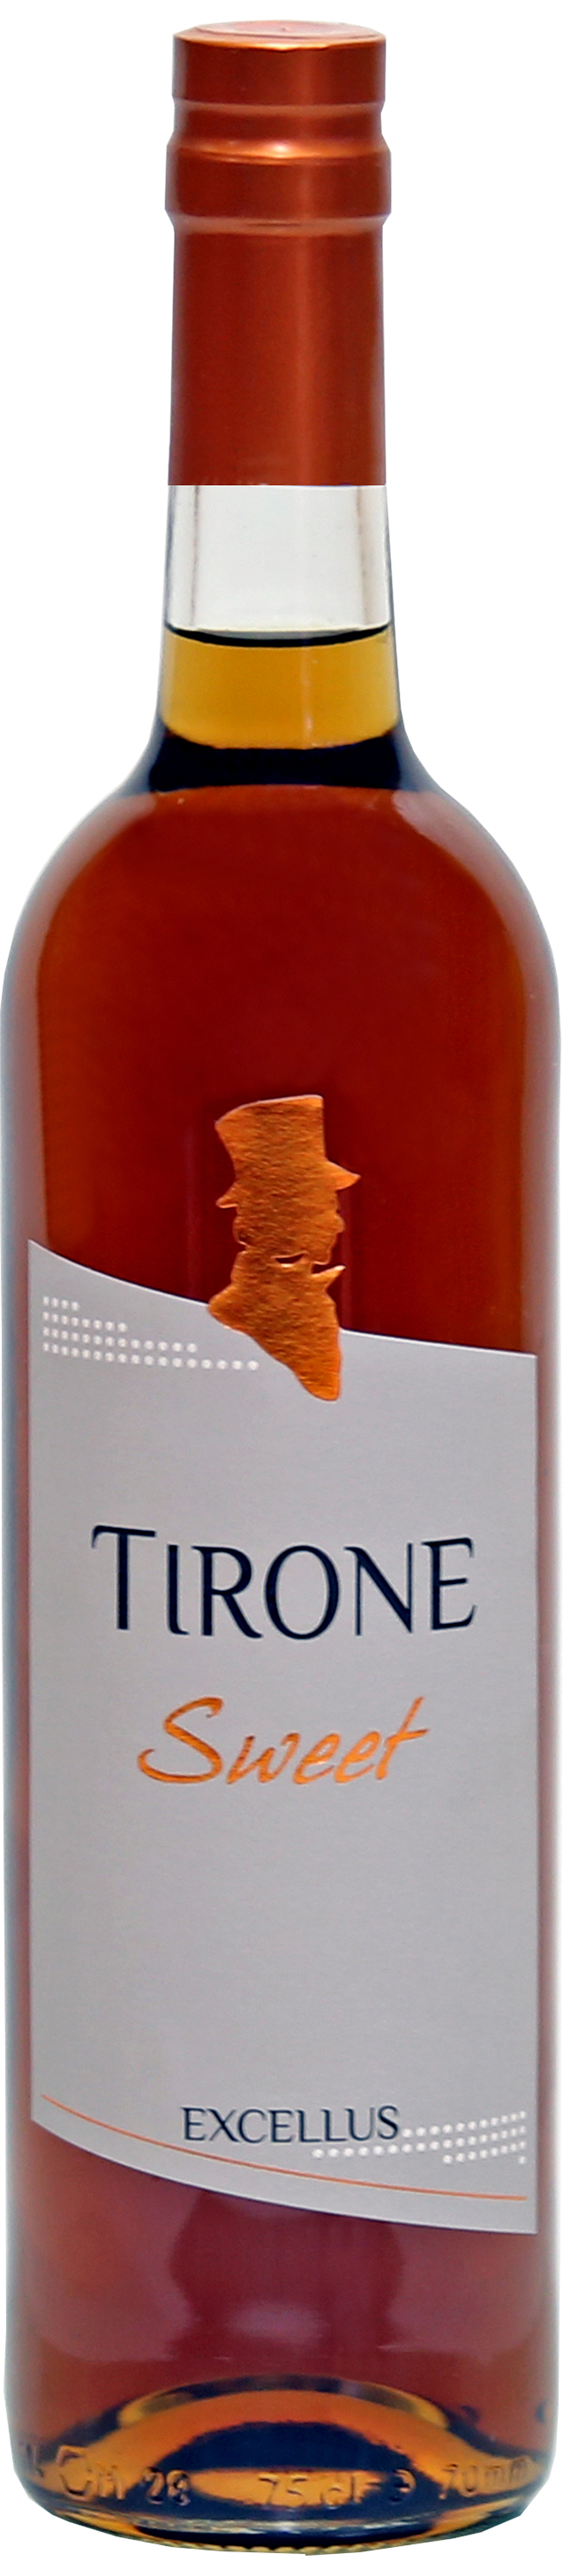 Tirone Sweet